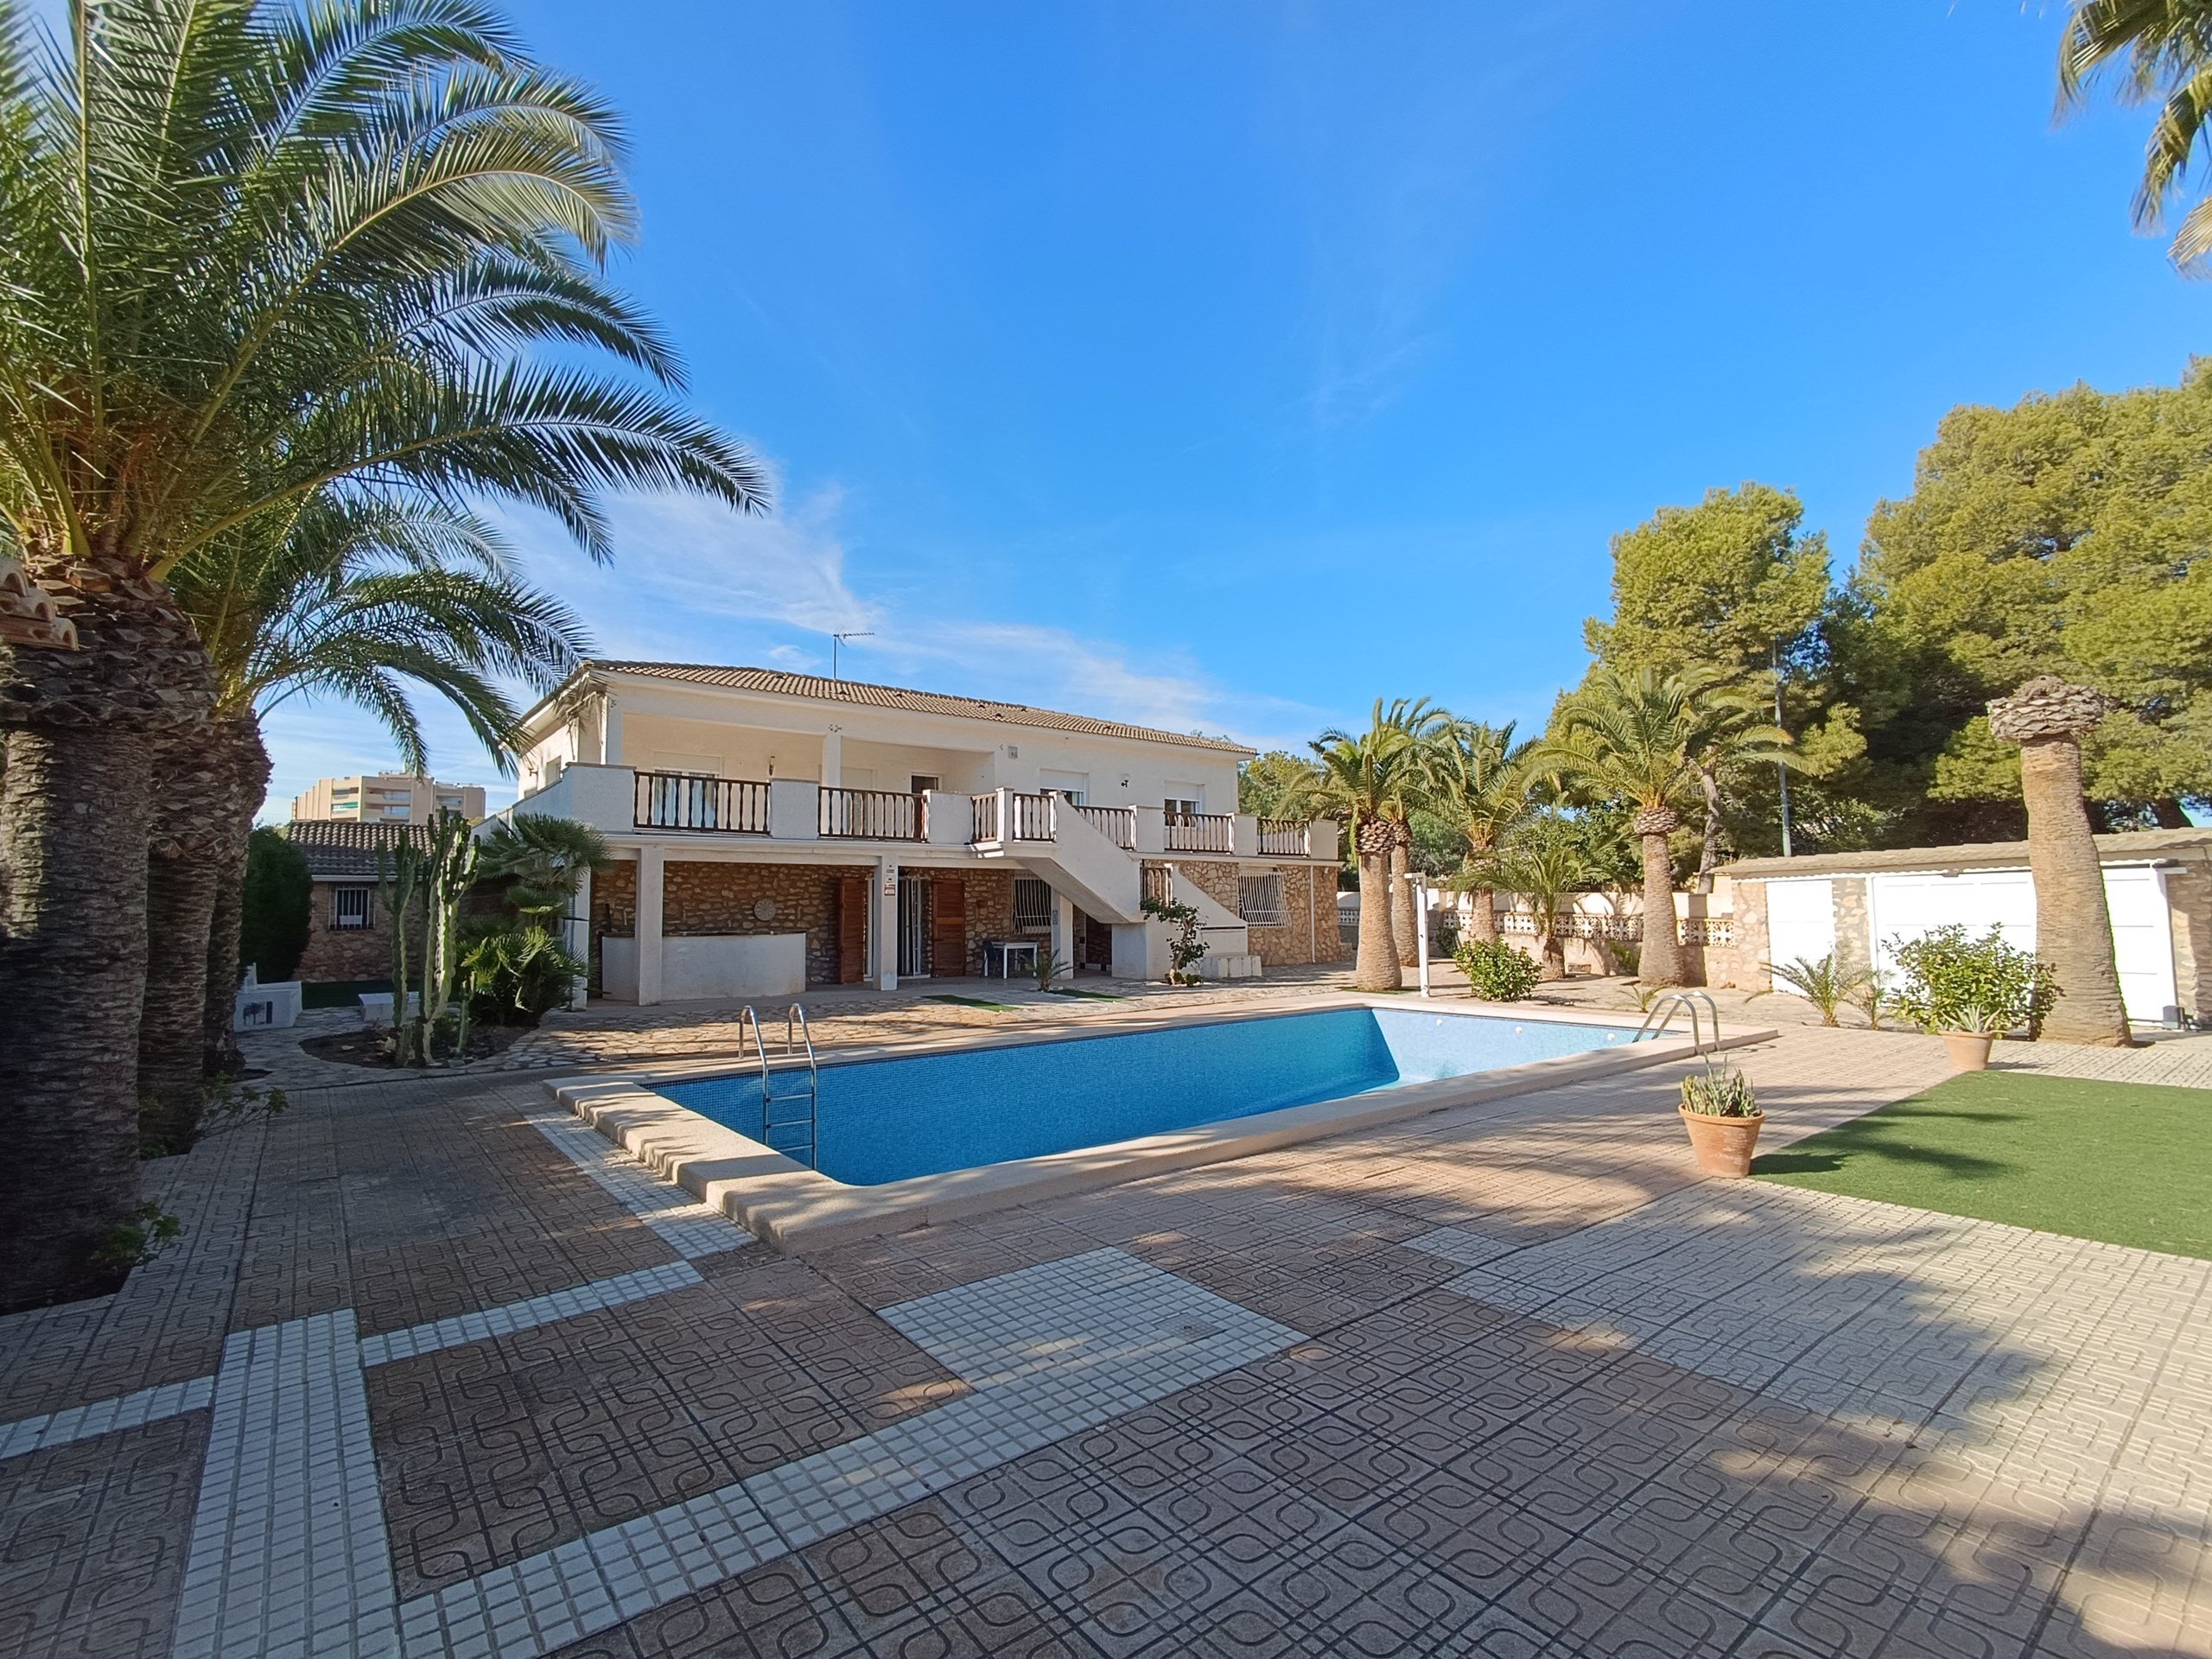 Villa for sale in Ebro Delta 1